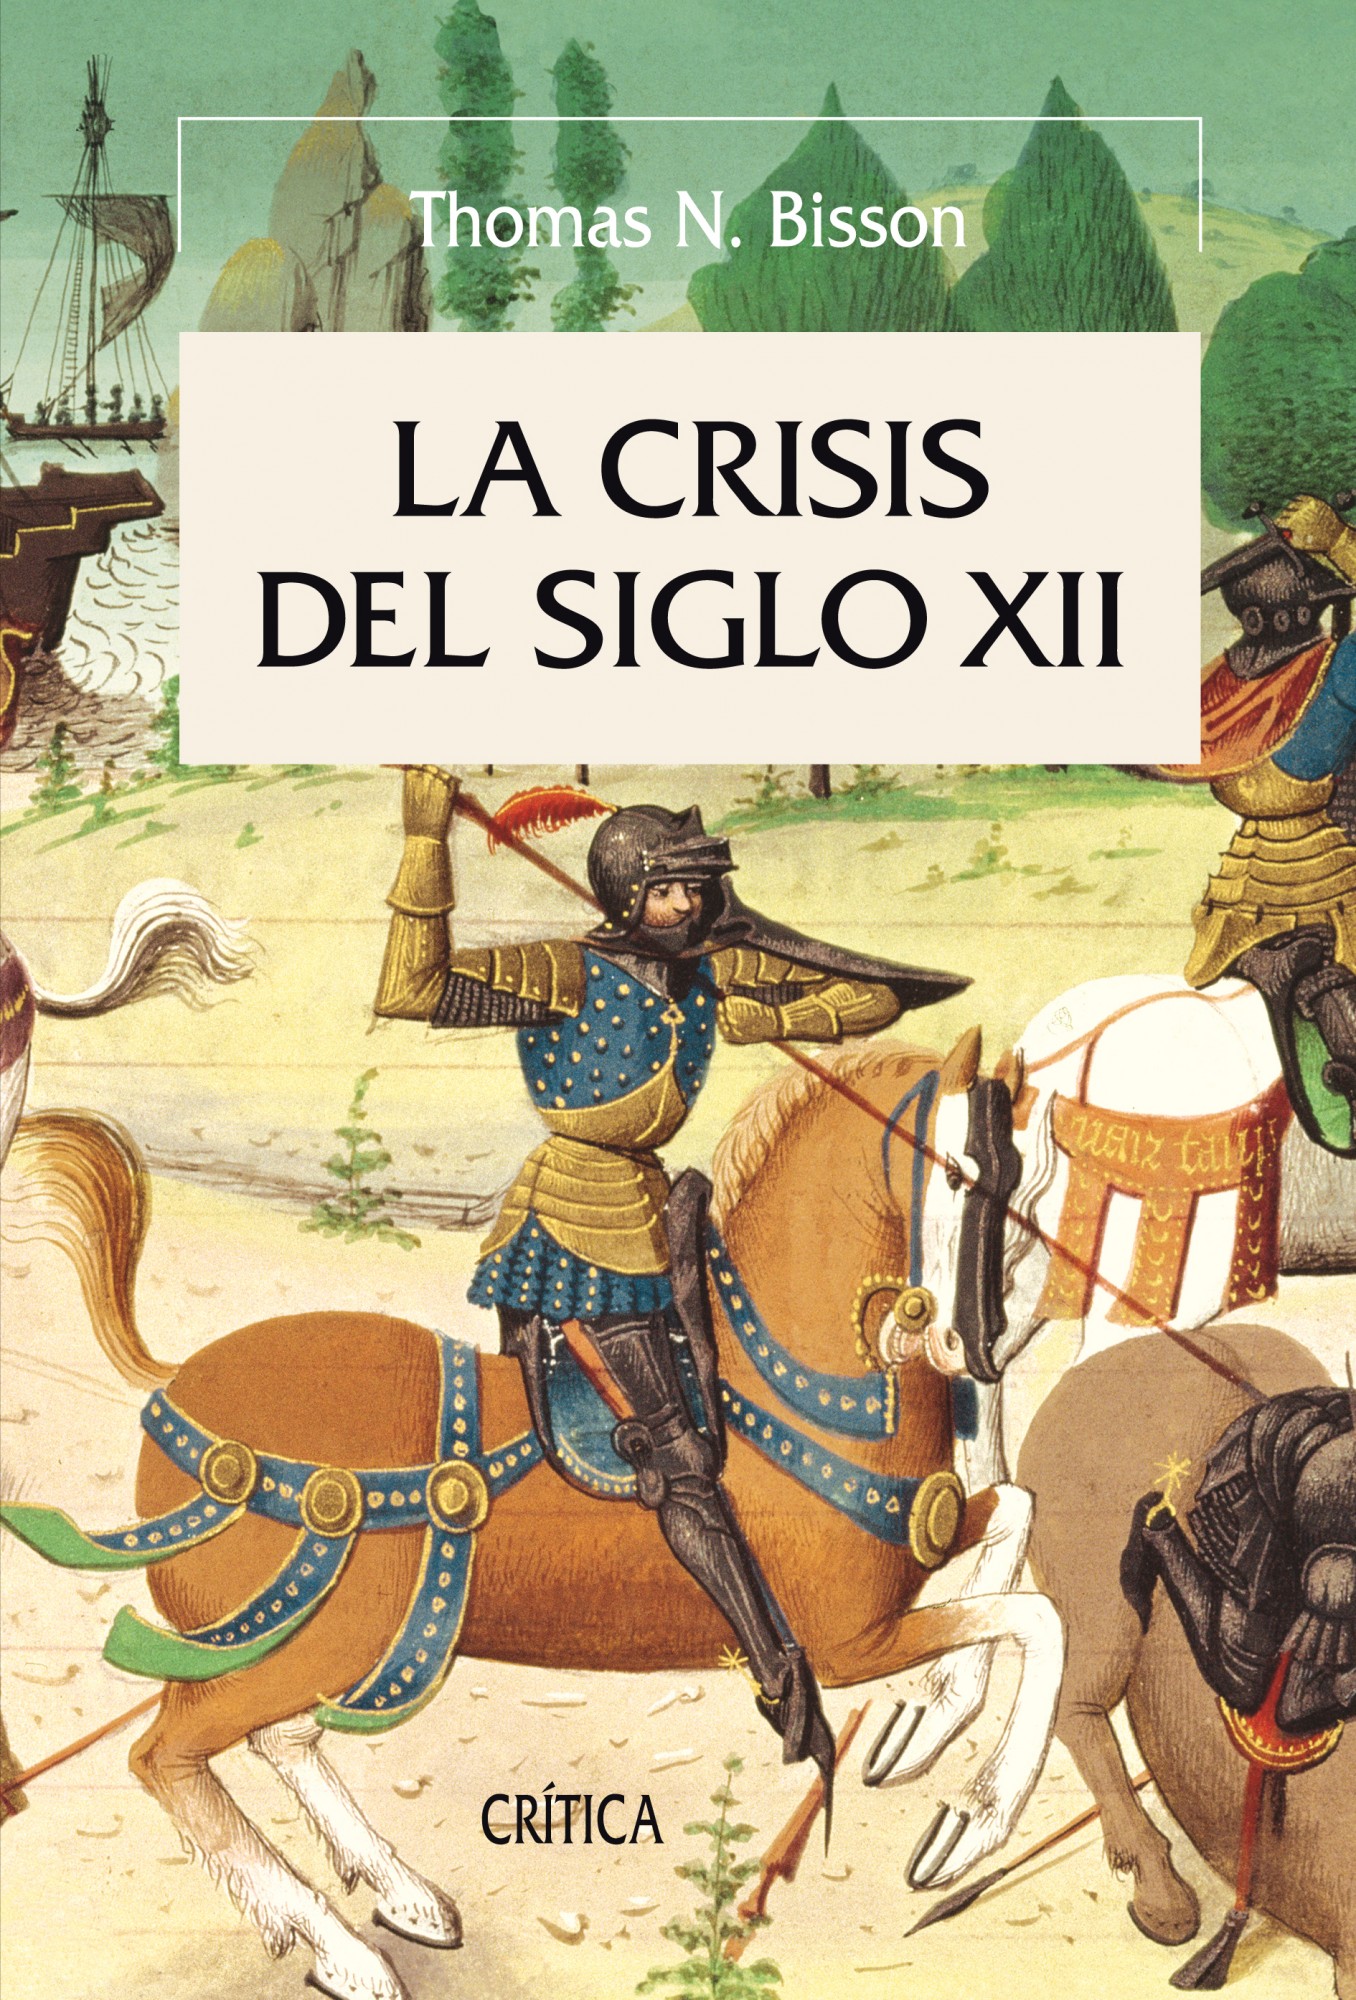 La crisis del siglo XII